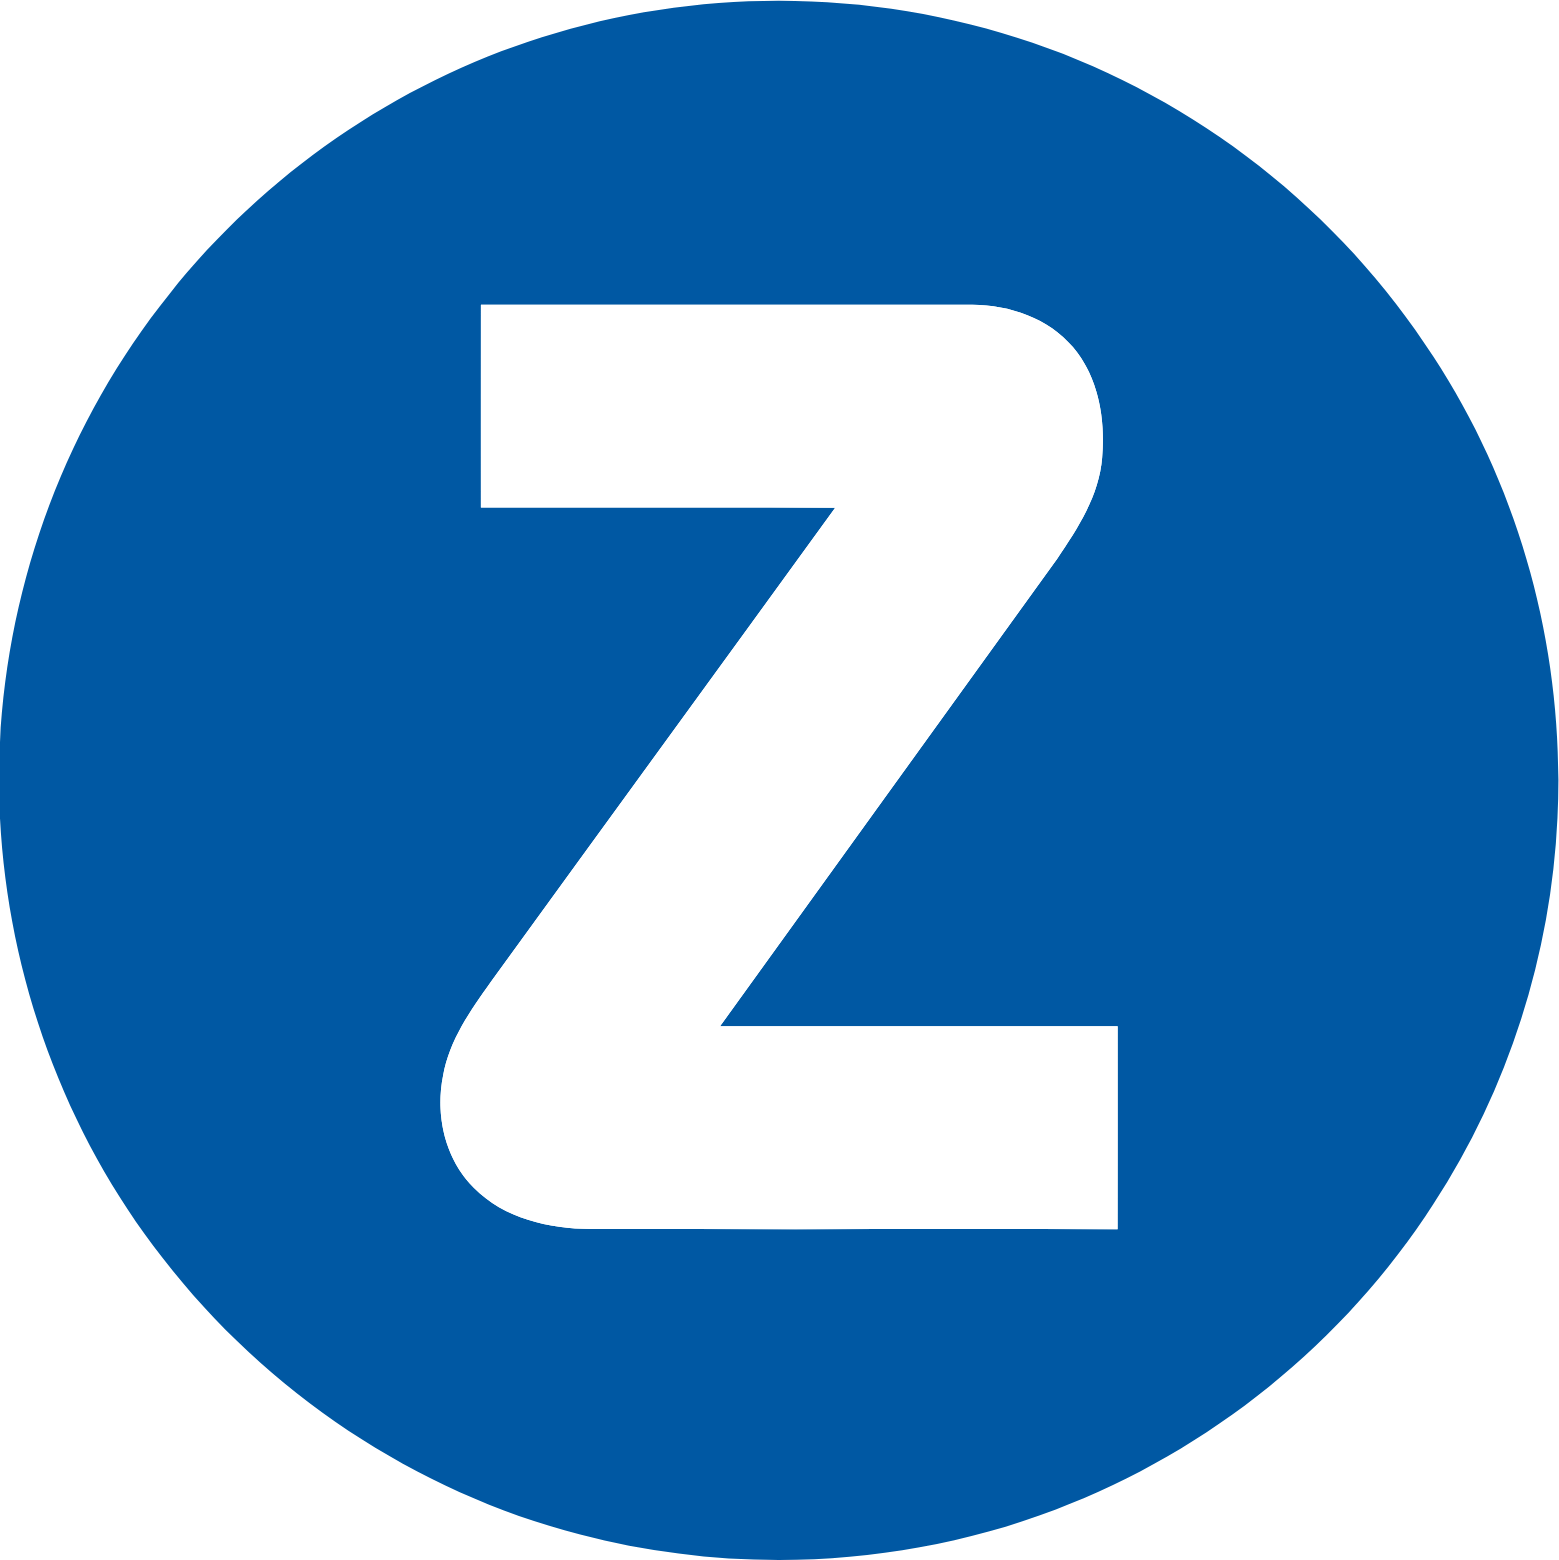 Zealand Pharma logo (PNG transparent)